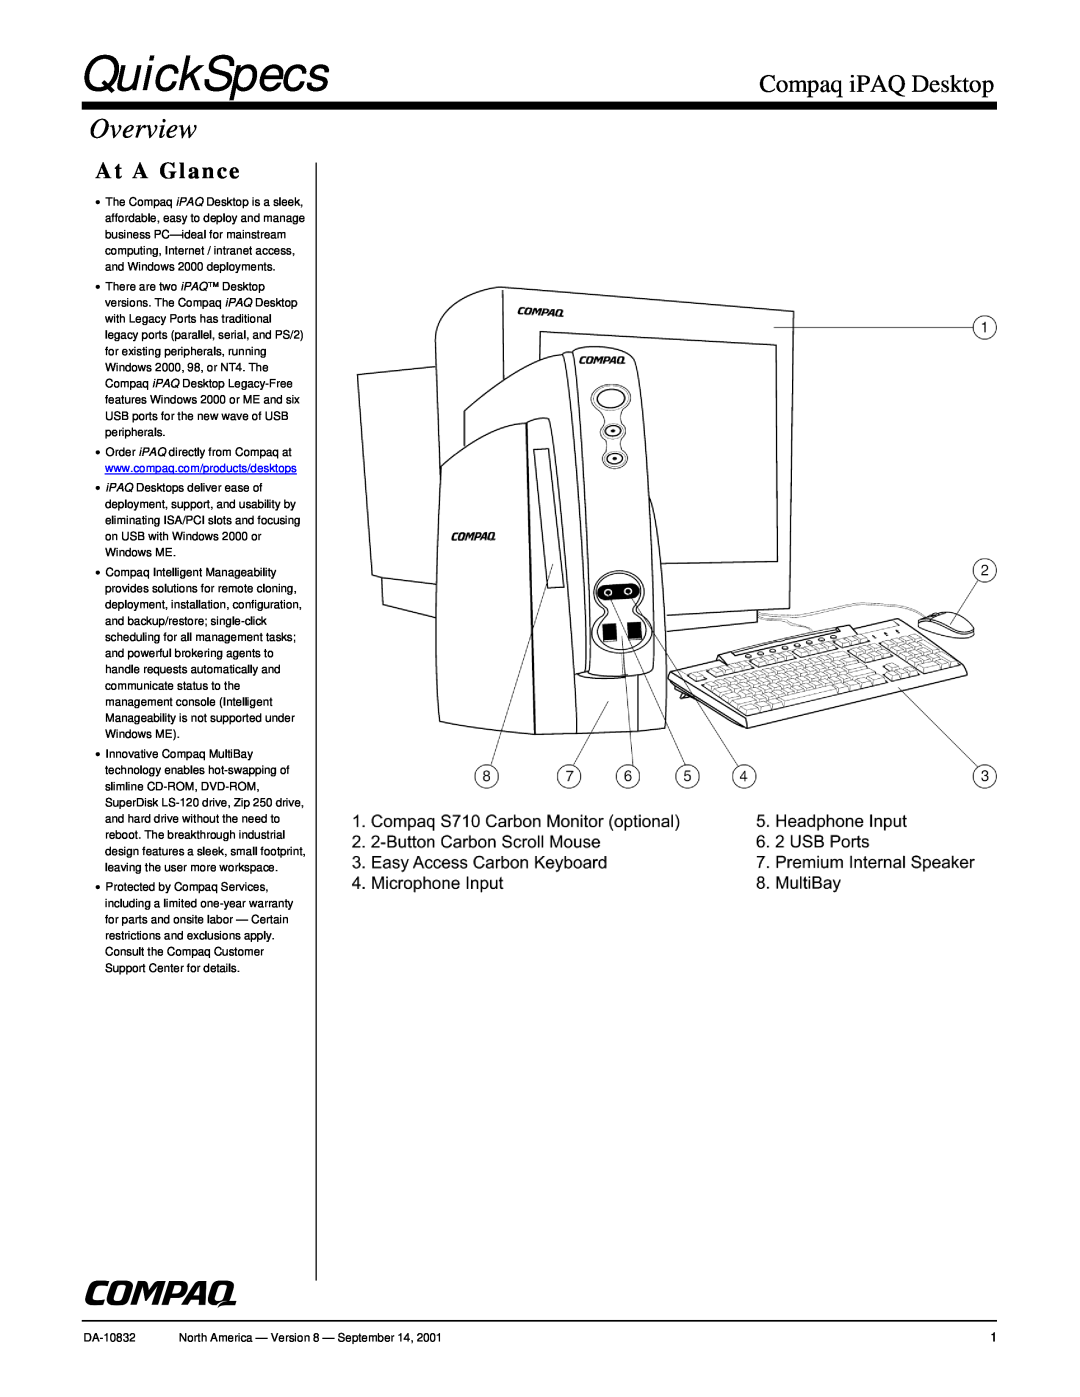 Compaq DA-10832 warranty QuickSpecs, Overview, Compaq iPAQ Desktop, At A Glance 